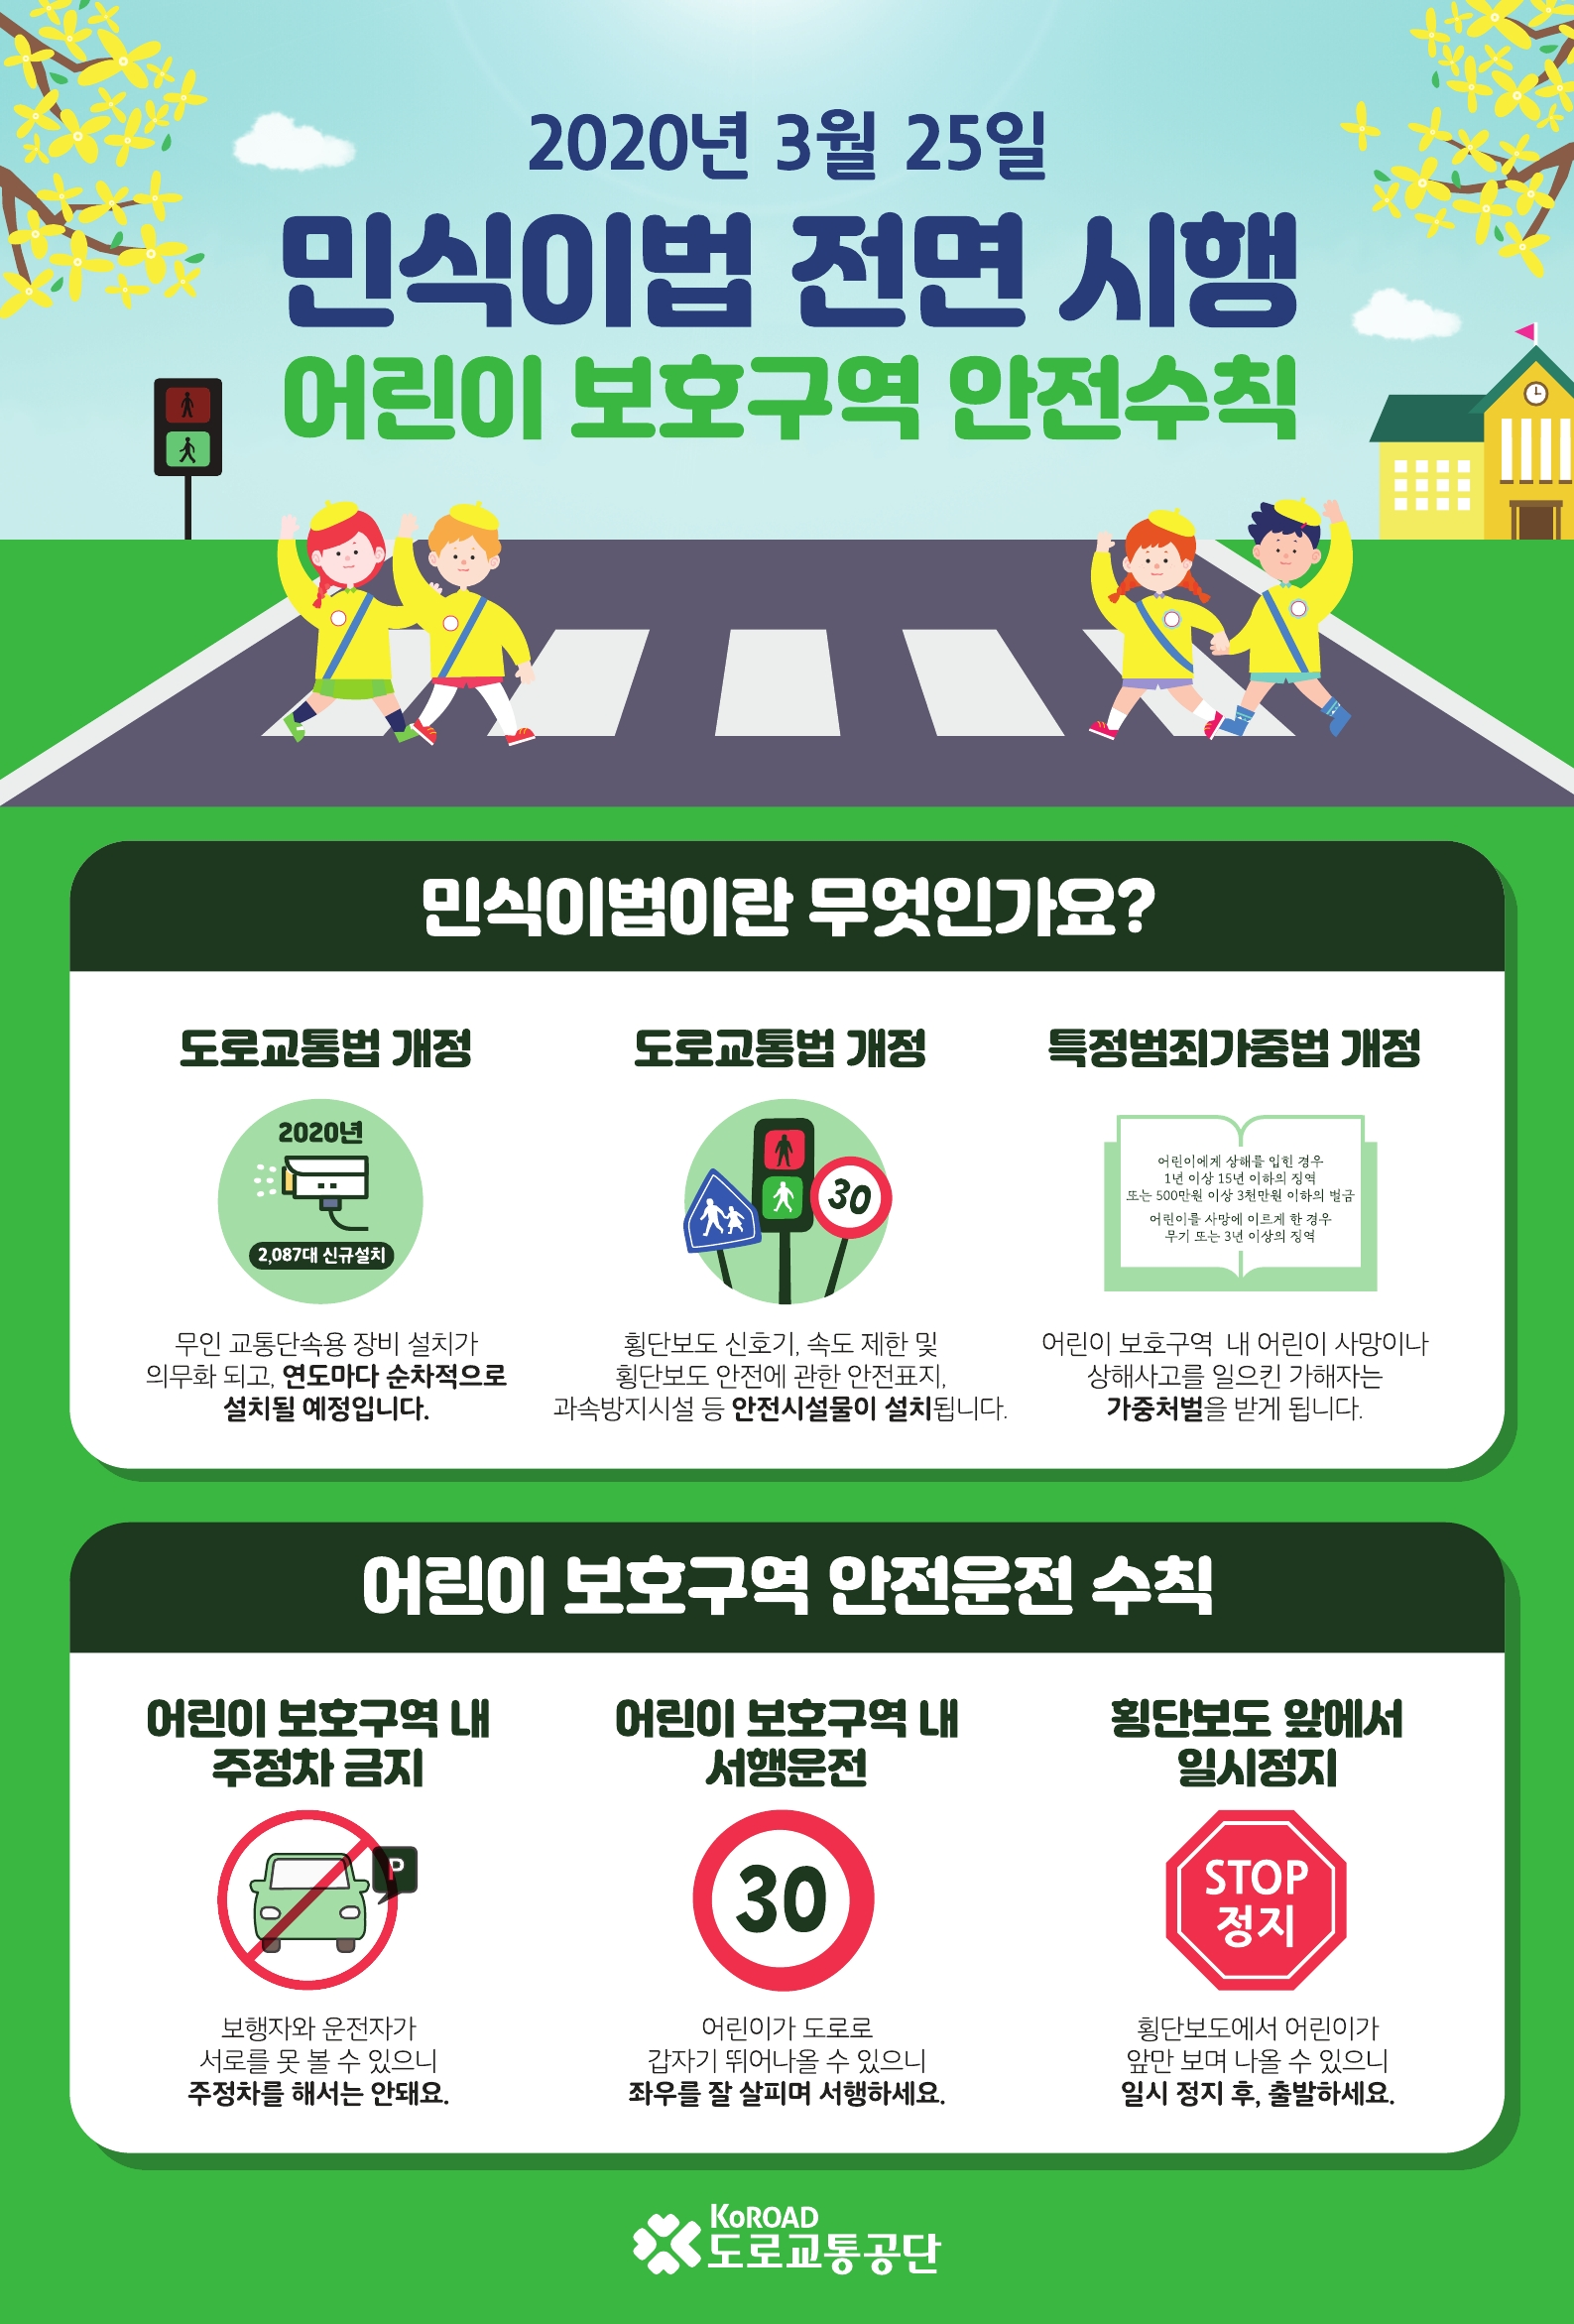 (붙임) 민식이법 홍보 포스터(도로교통공단)